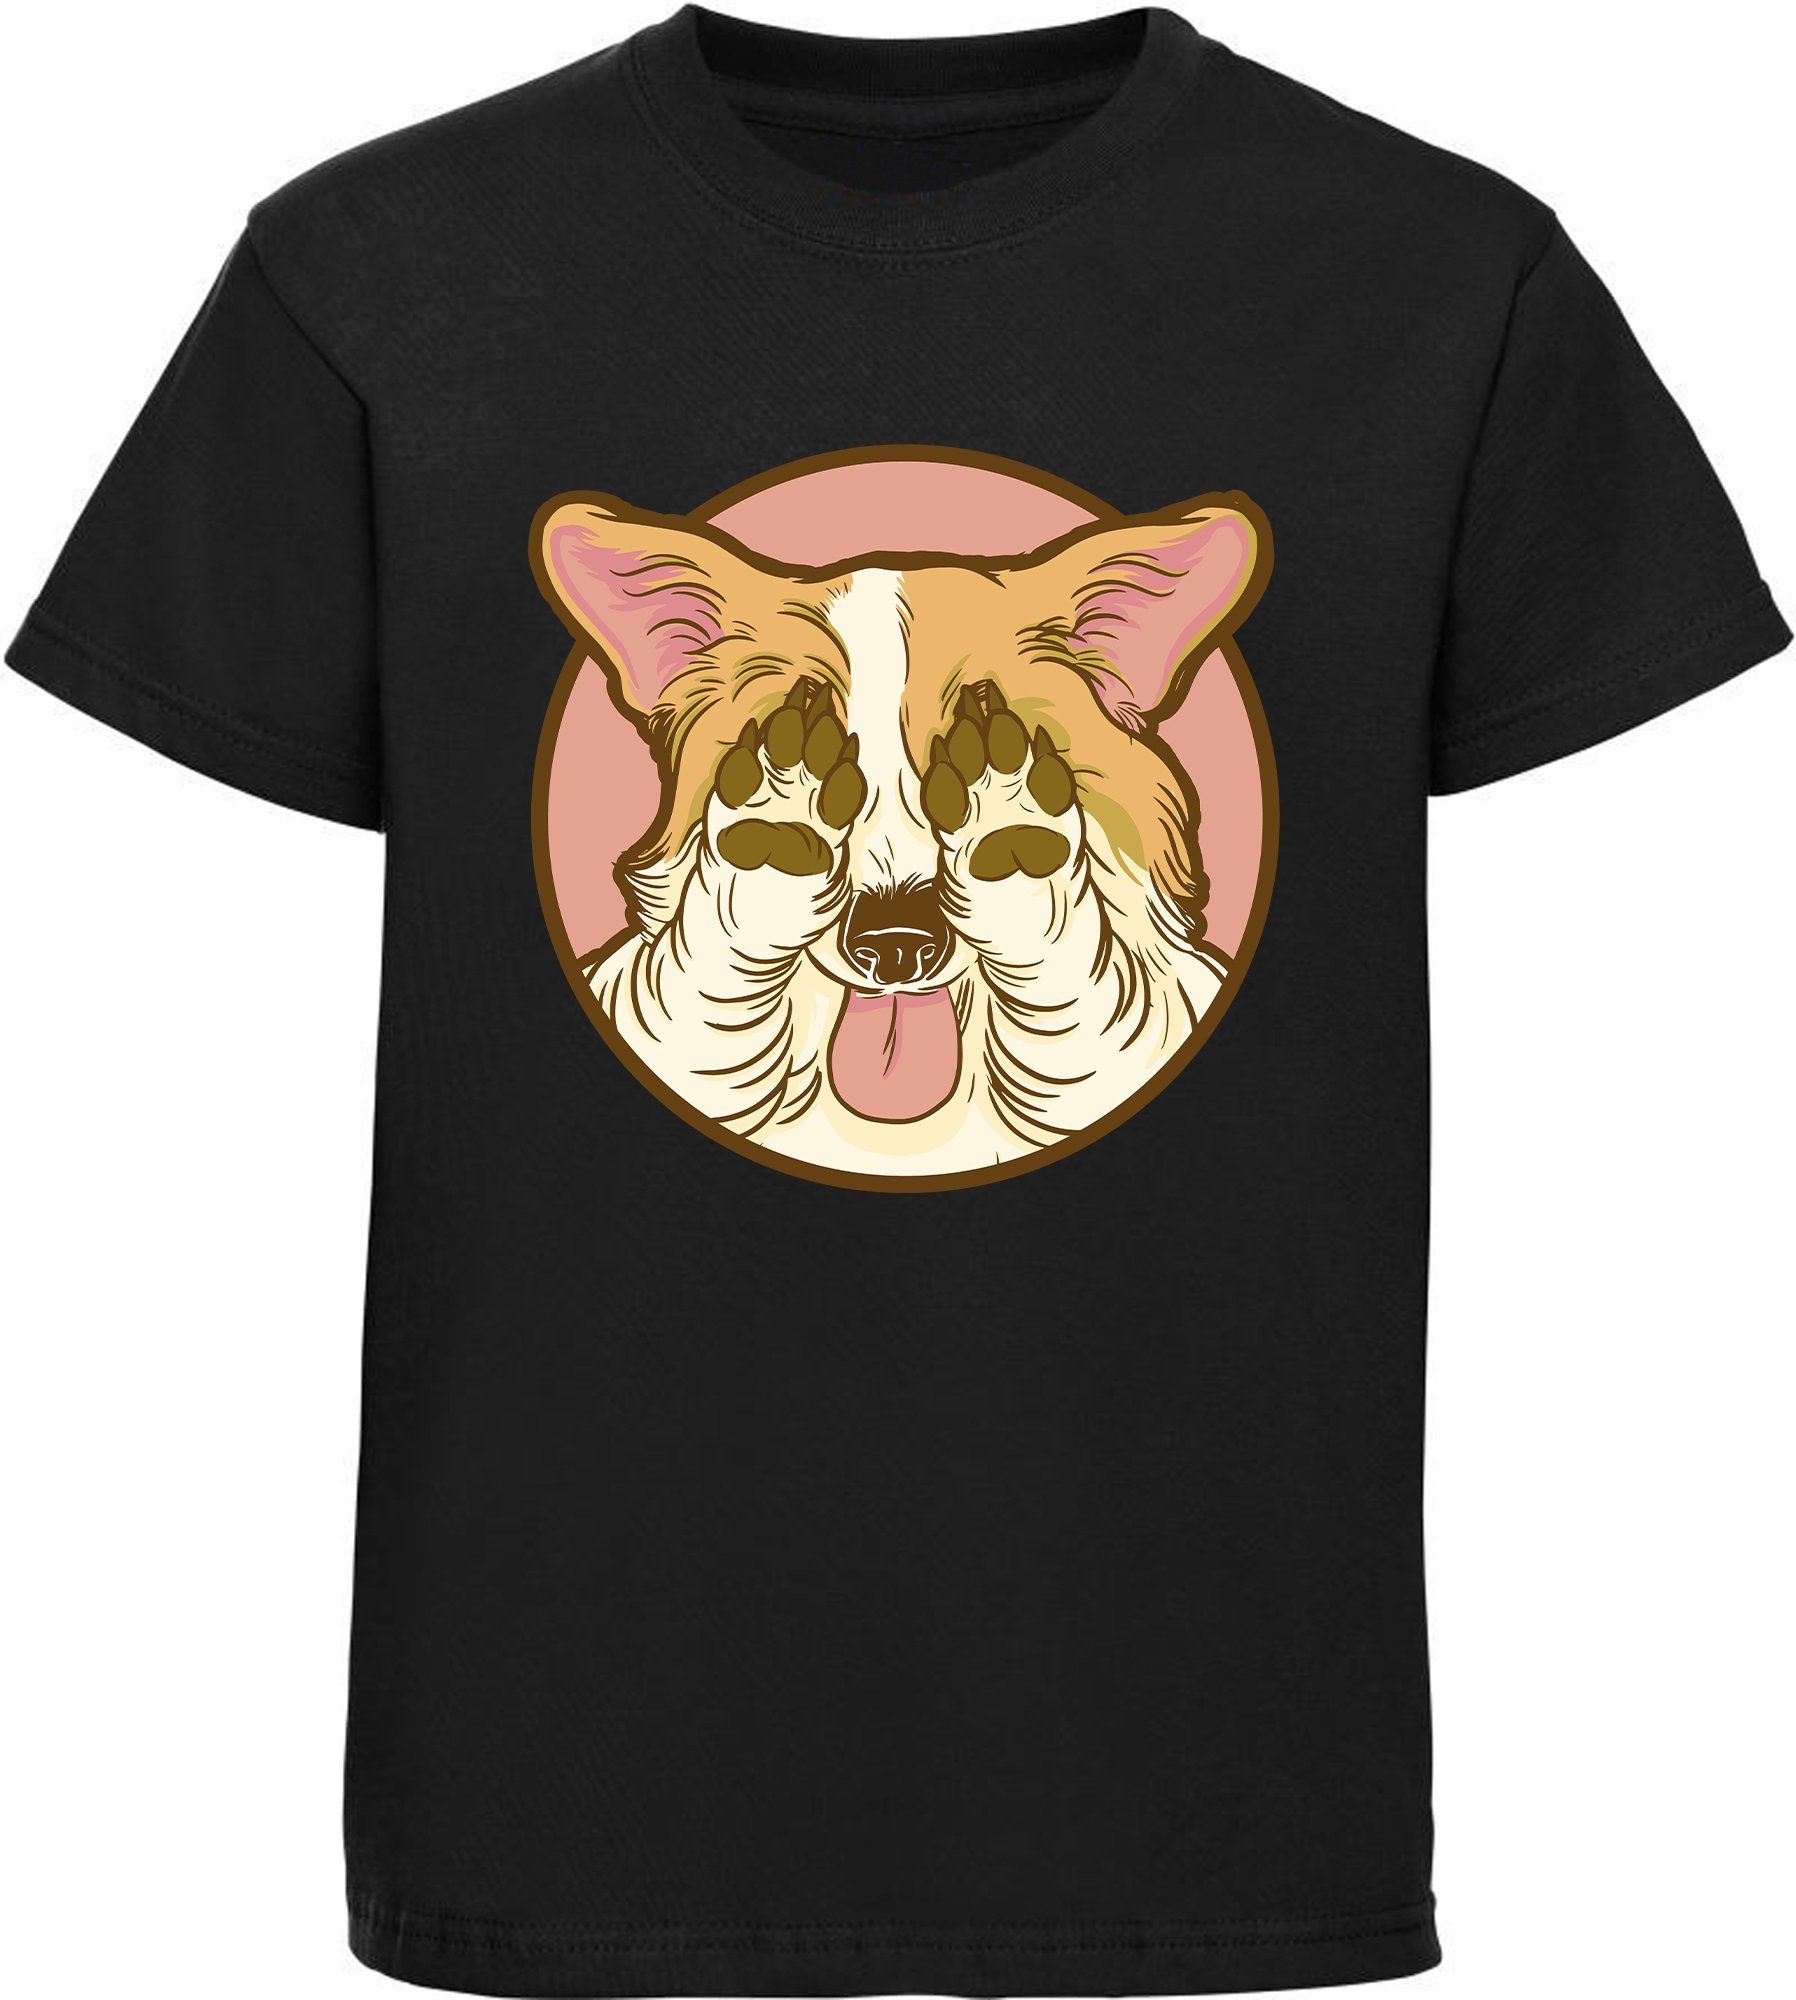 MyDesign24 Print-Shirt bedrucktes Kinder Hunde T-Shirt - Corgi der seine Augen zu hält Baumwollshirt mit Aufdruck, i226 schwarz